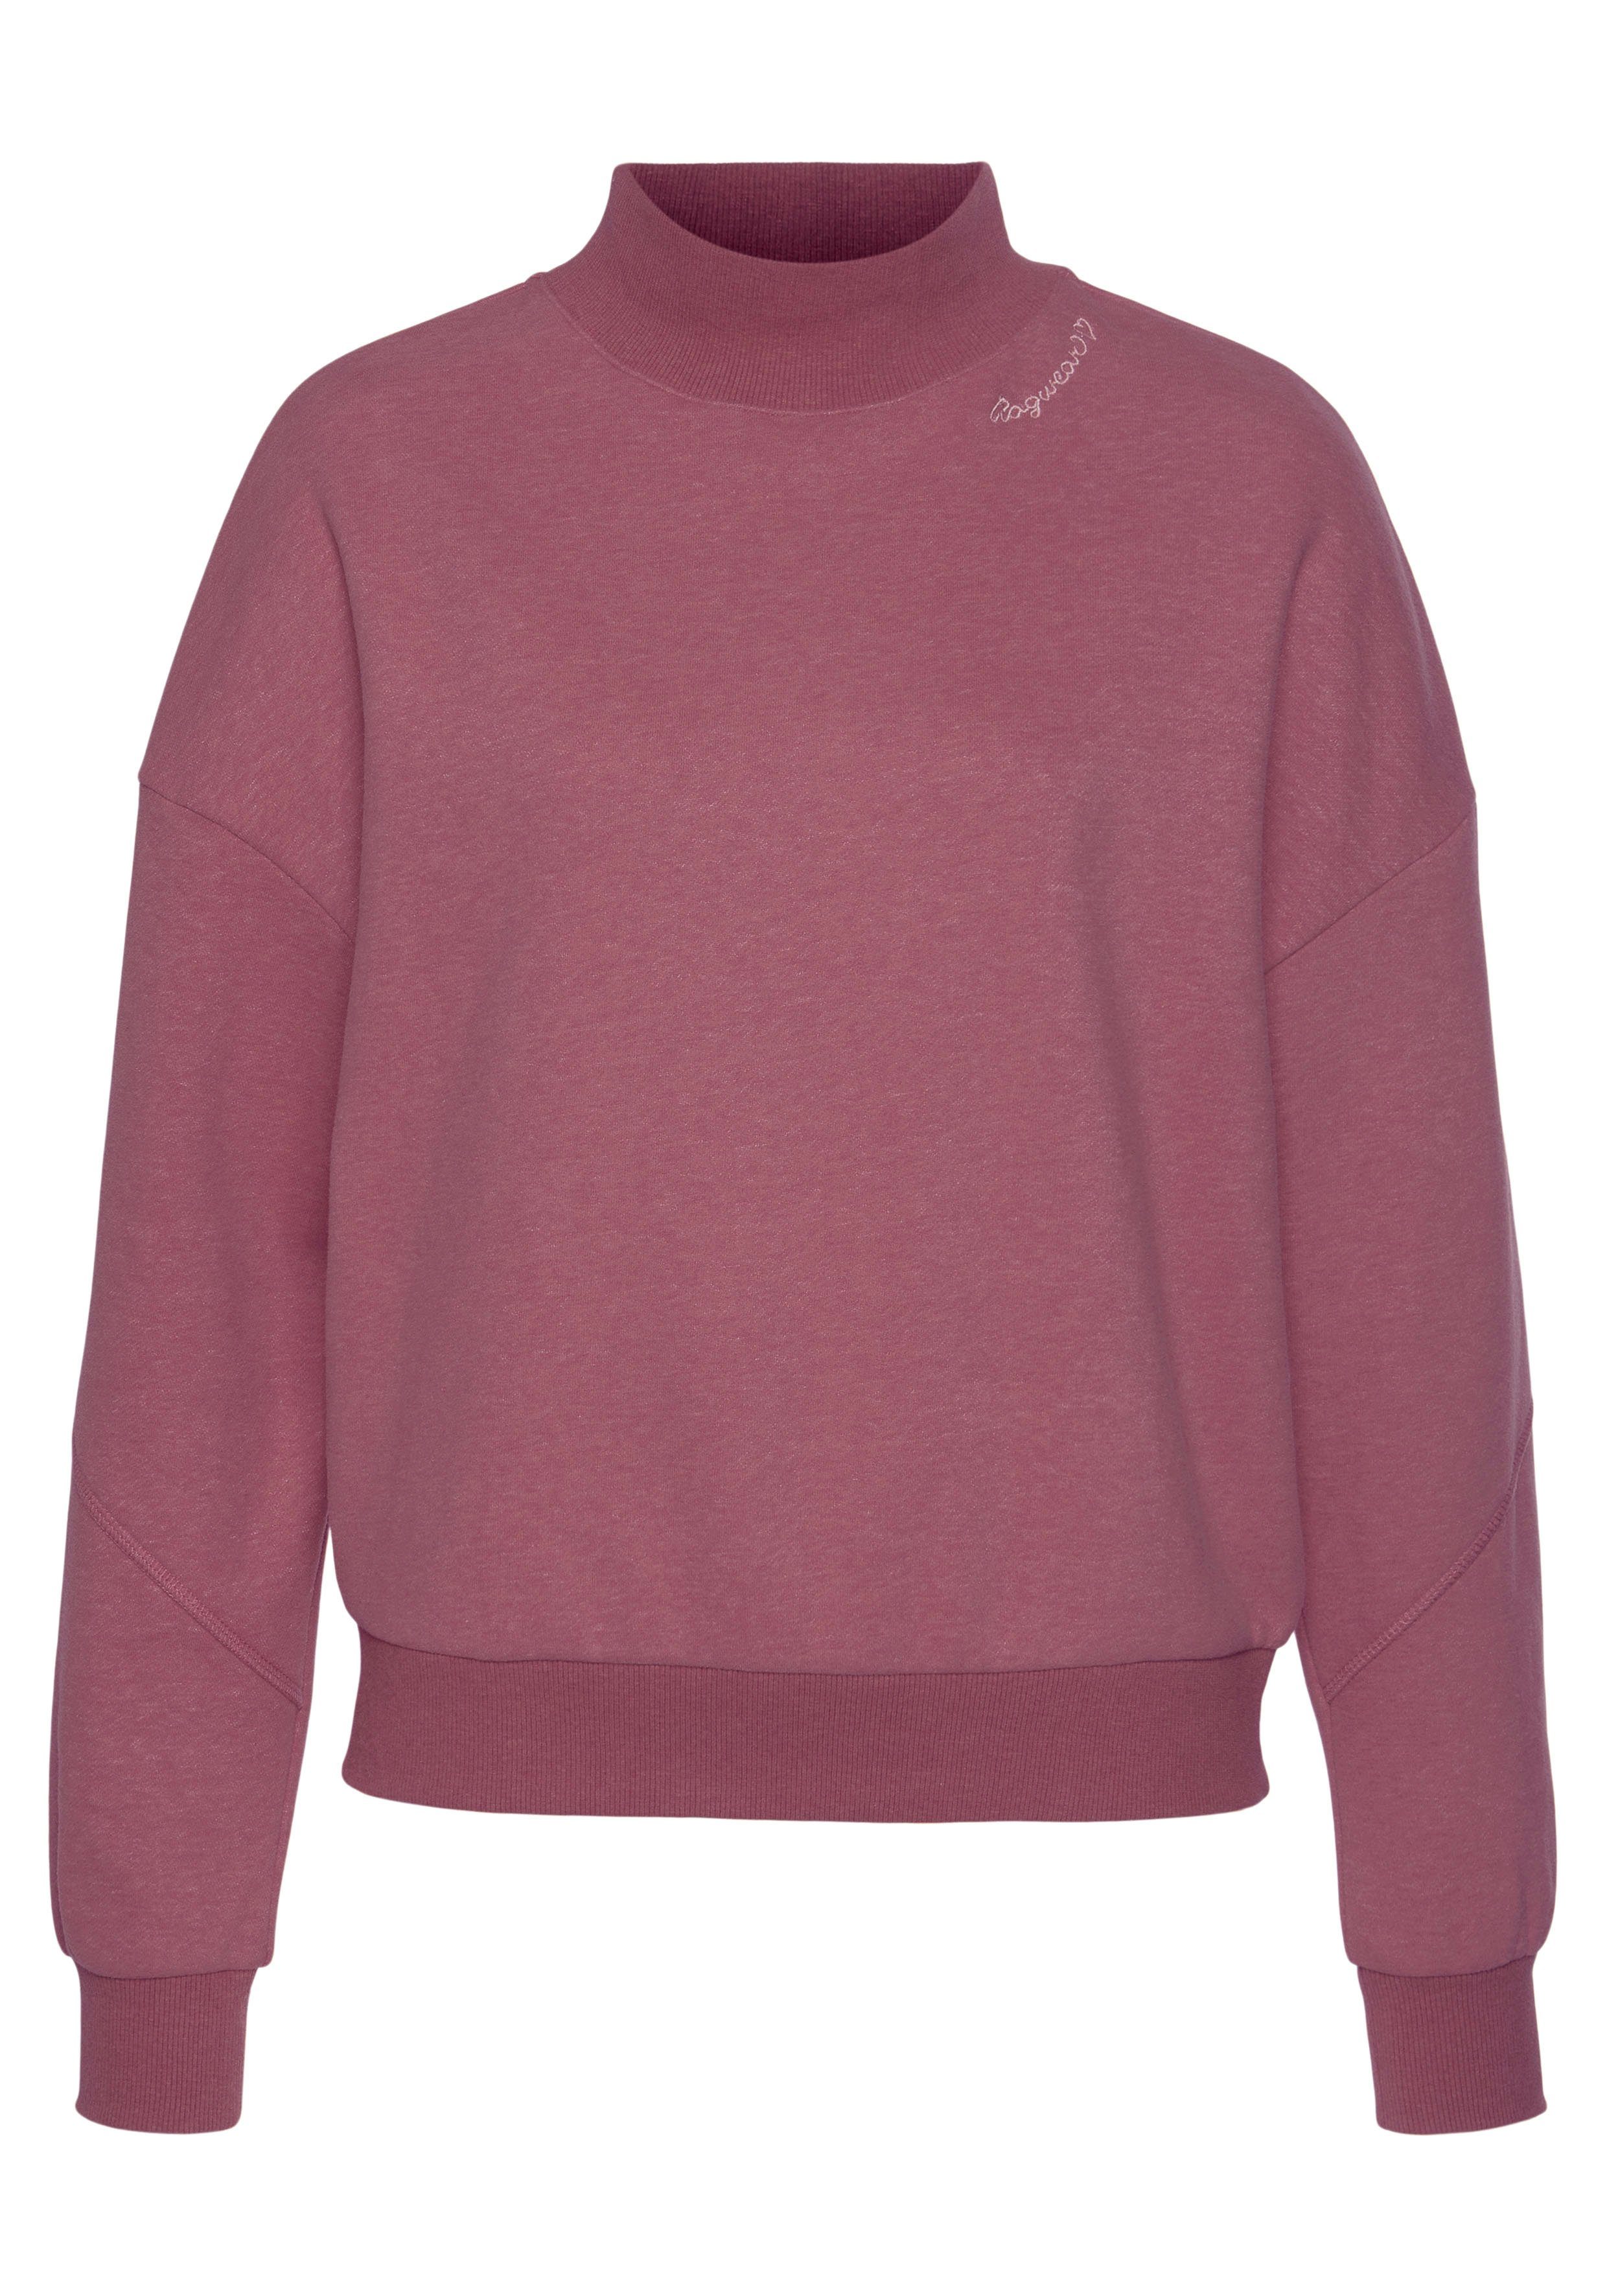 Ragwear Sweater KAILA SWEAT, Vegan, von PETA verifiziertes Sweatshirt  \